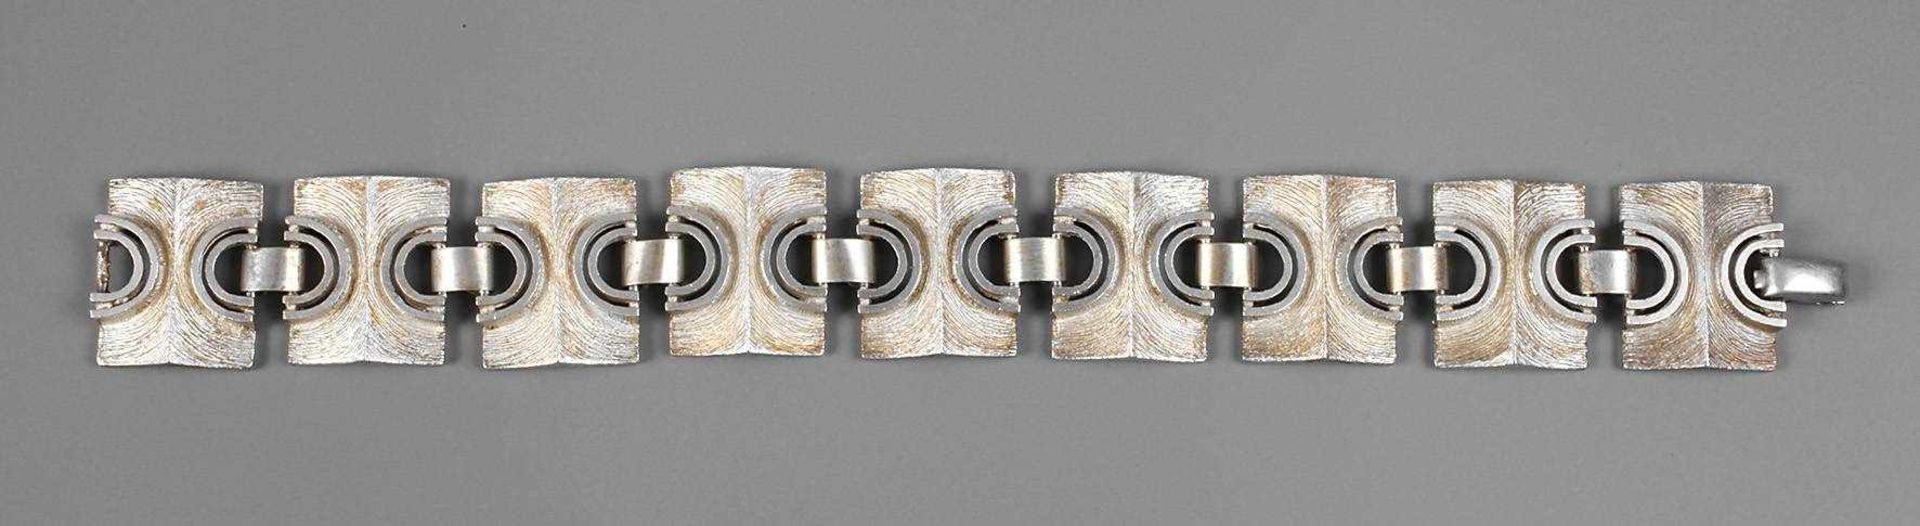 Breites Armbandum 1970, Silber gestempelt 925, strenge geometrische Schmuckglieder, Oberfläche teils